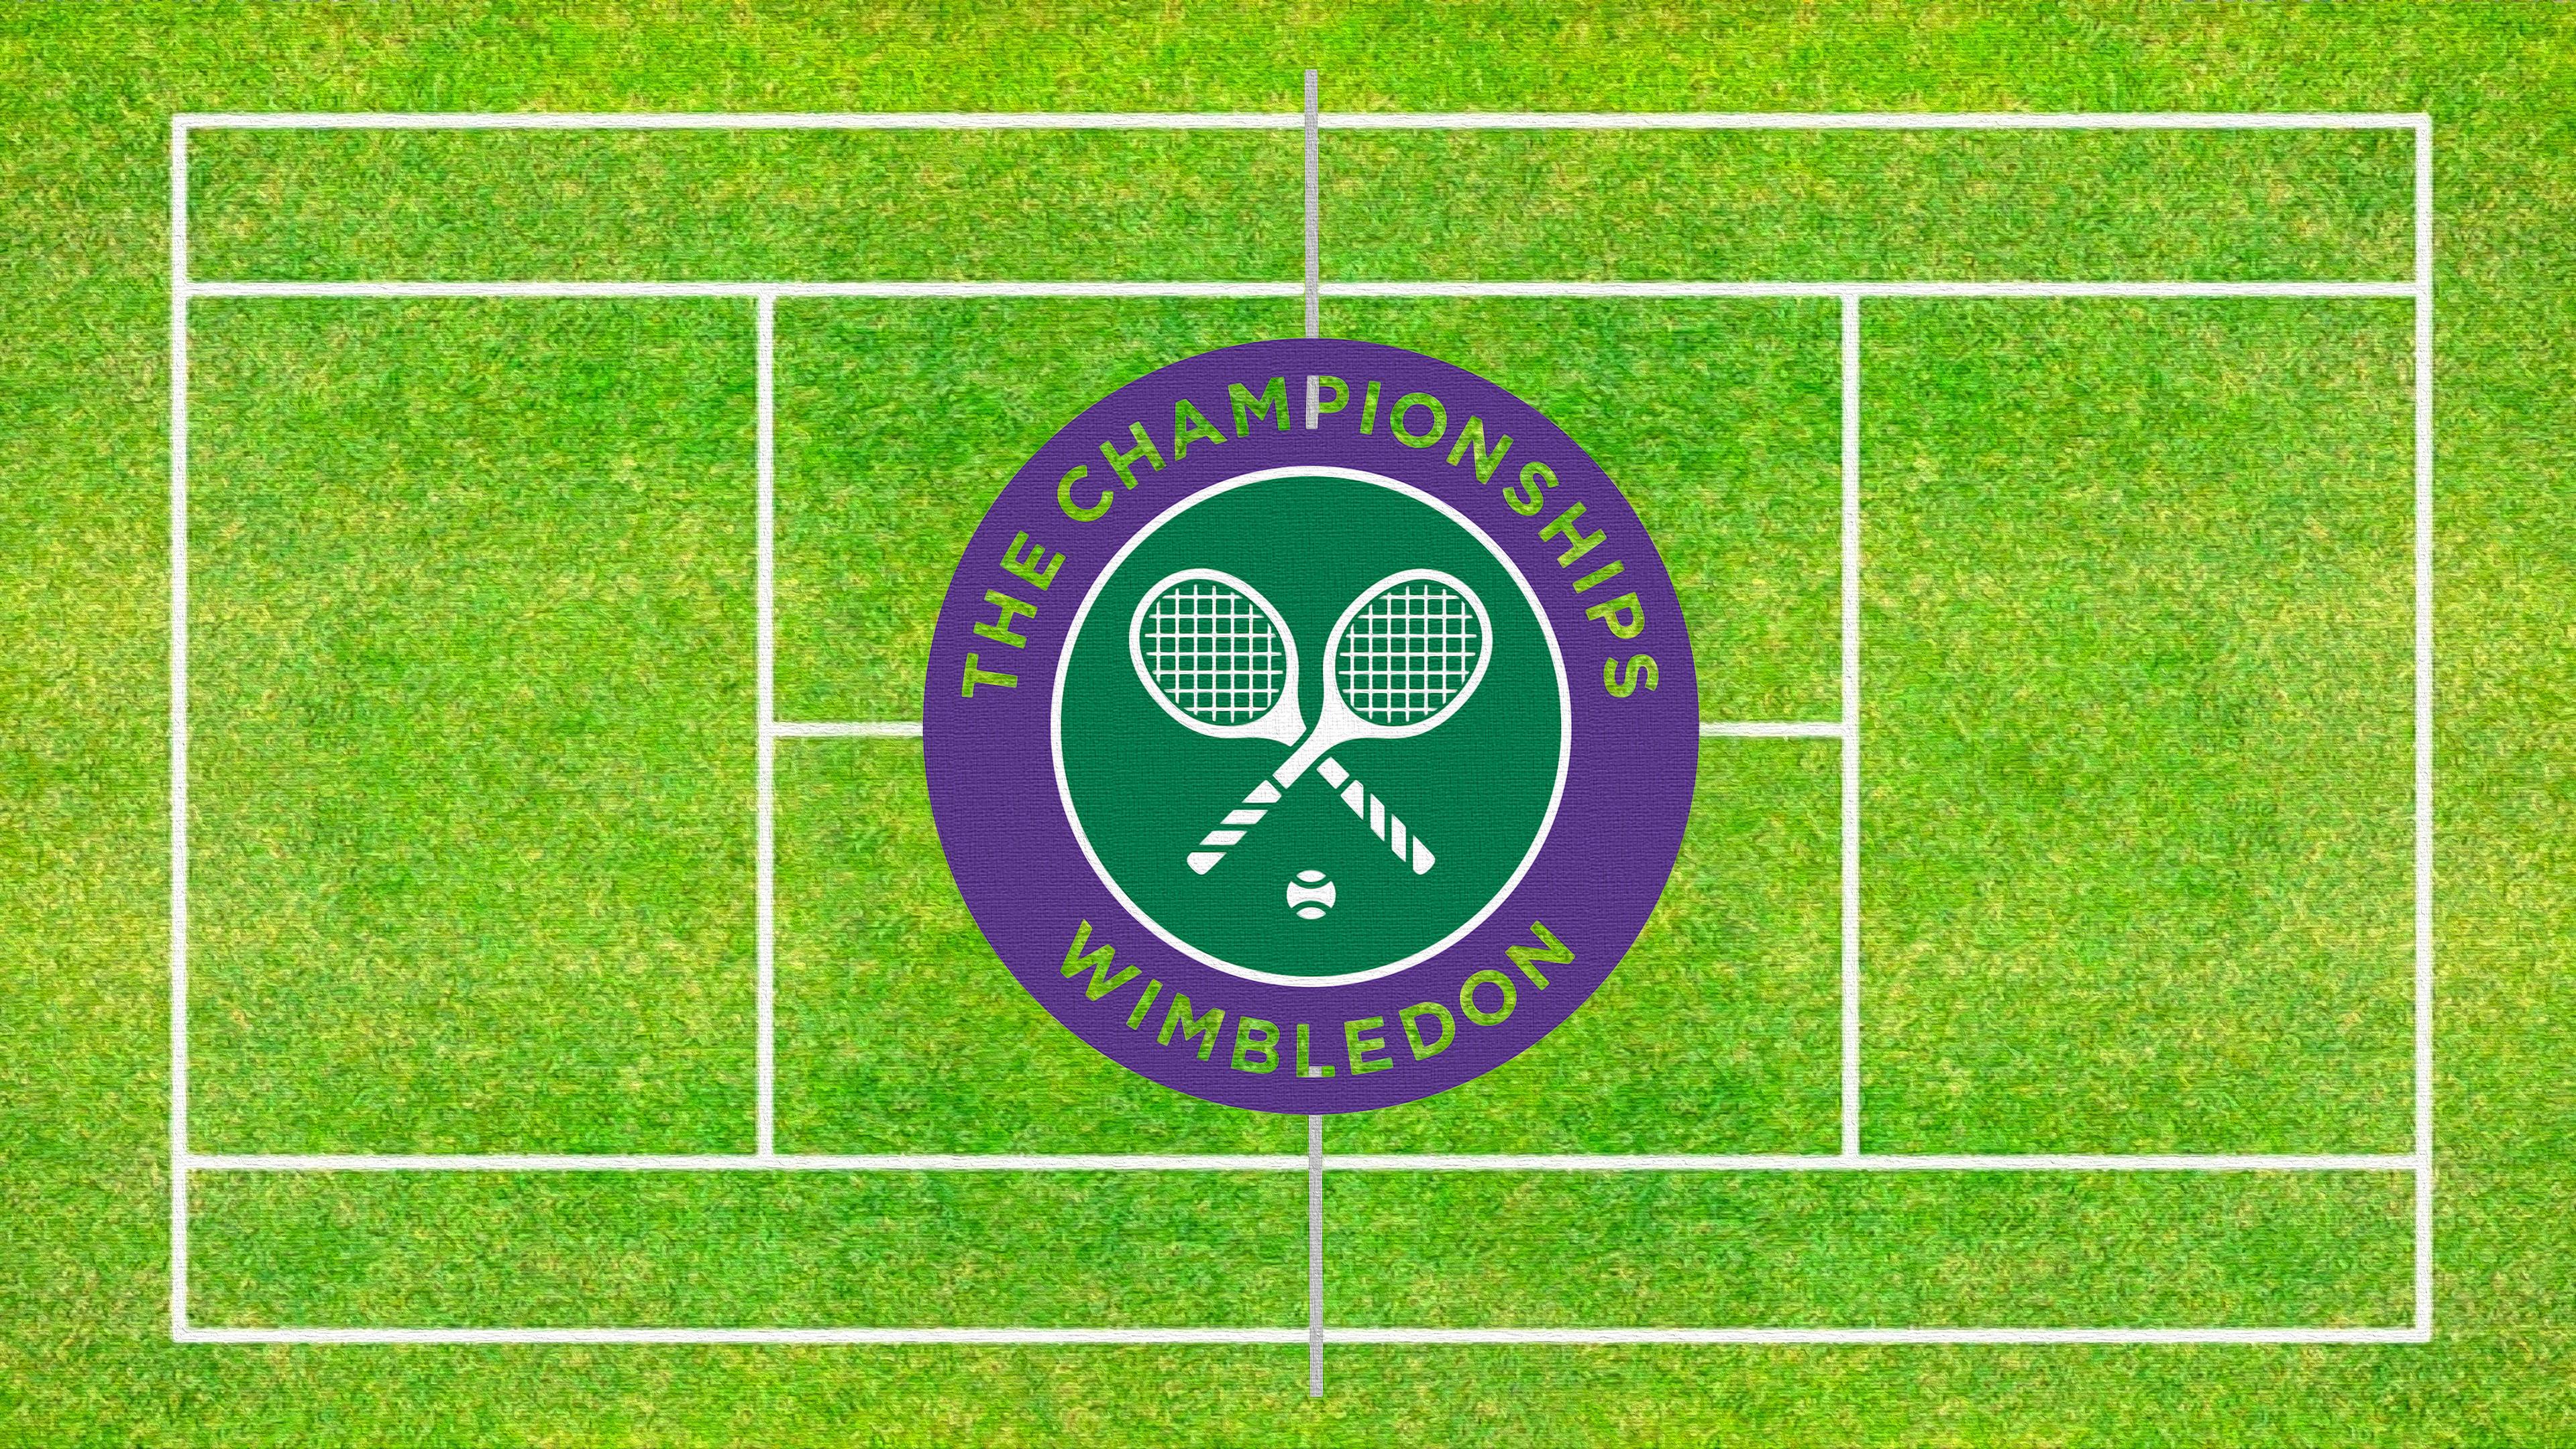 3840x2160 Wimbledon, Tennis Court wallpaper and background